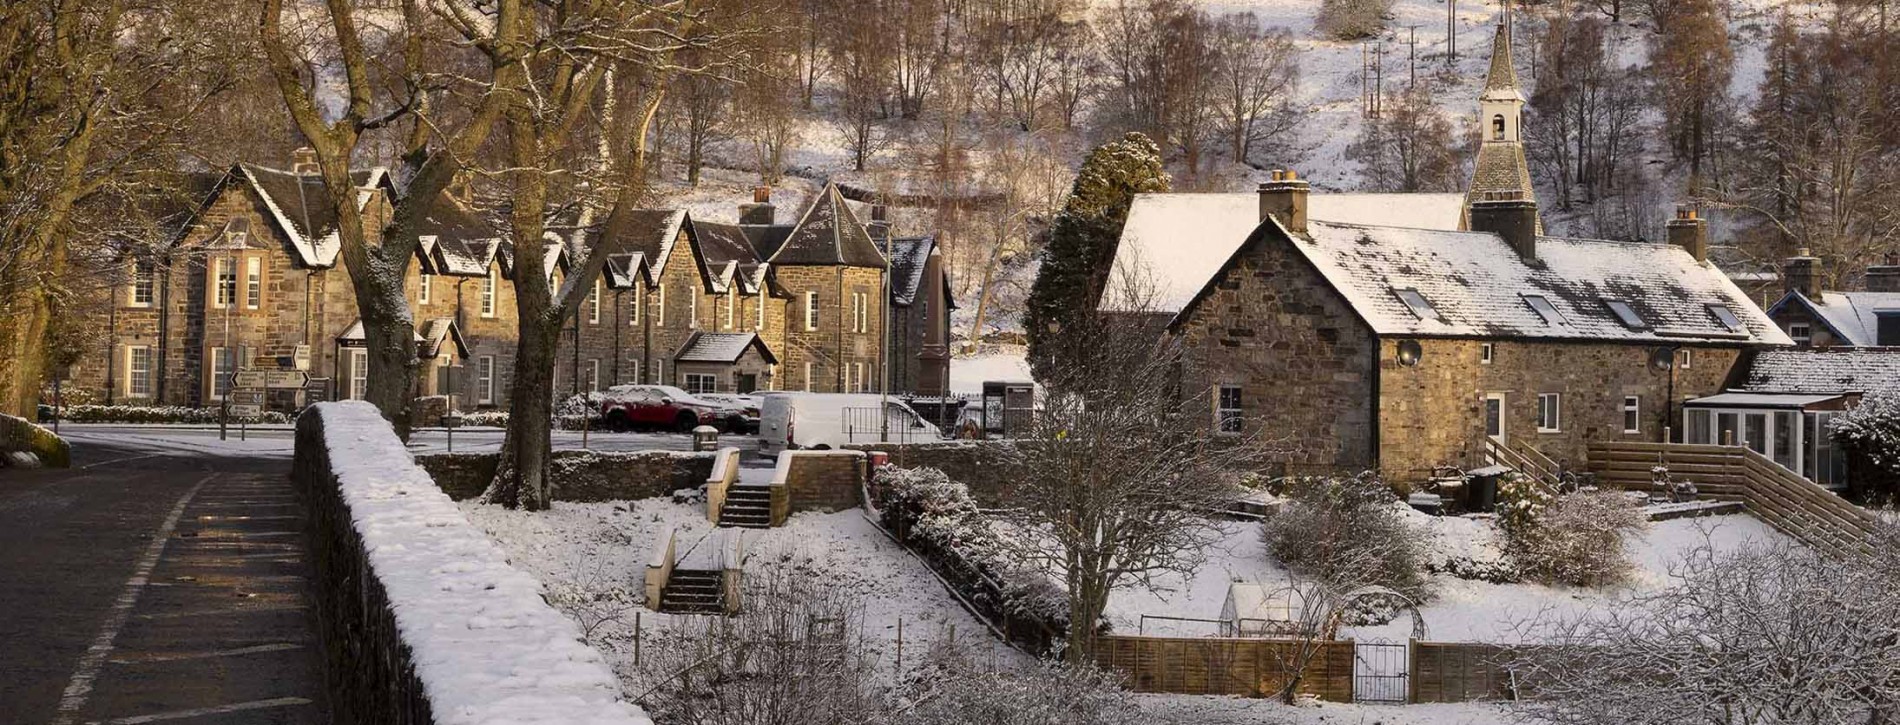 Kinloch Rannoch Village winter